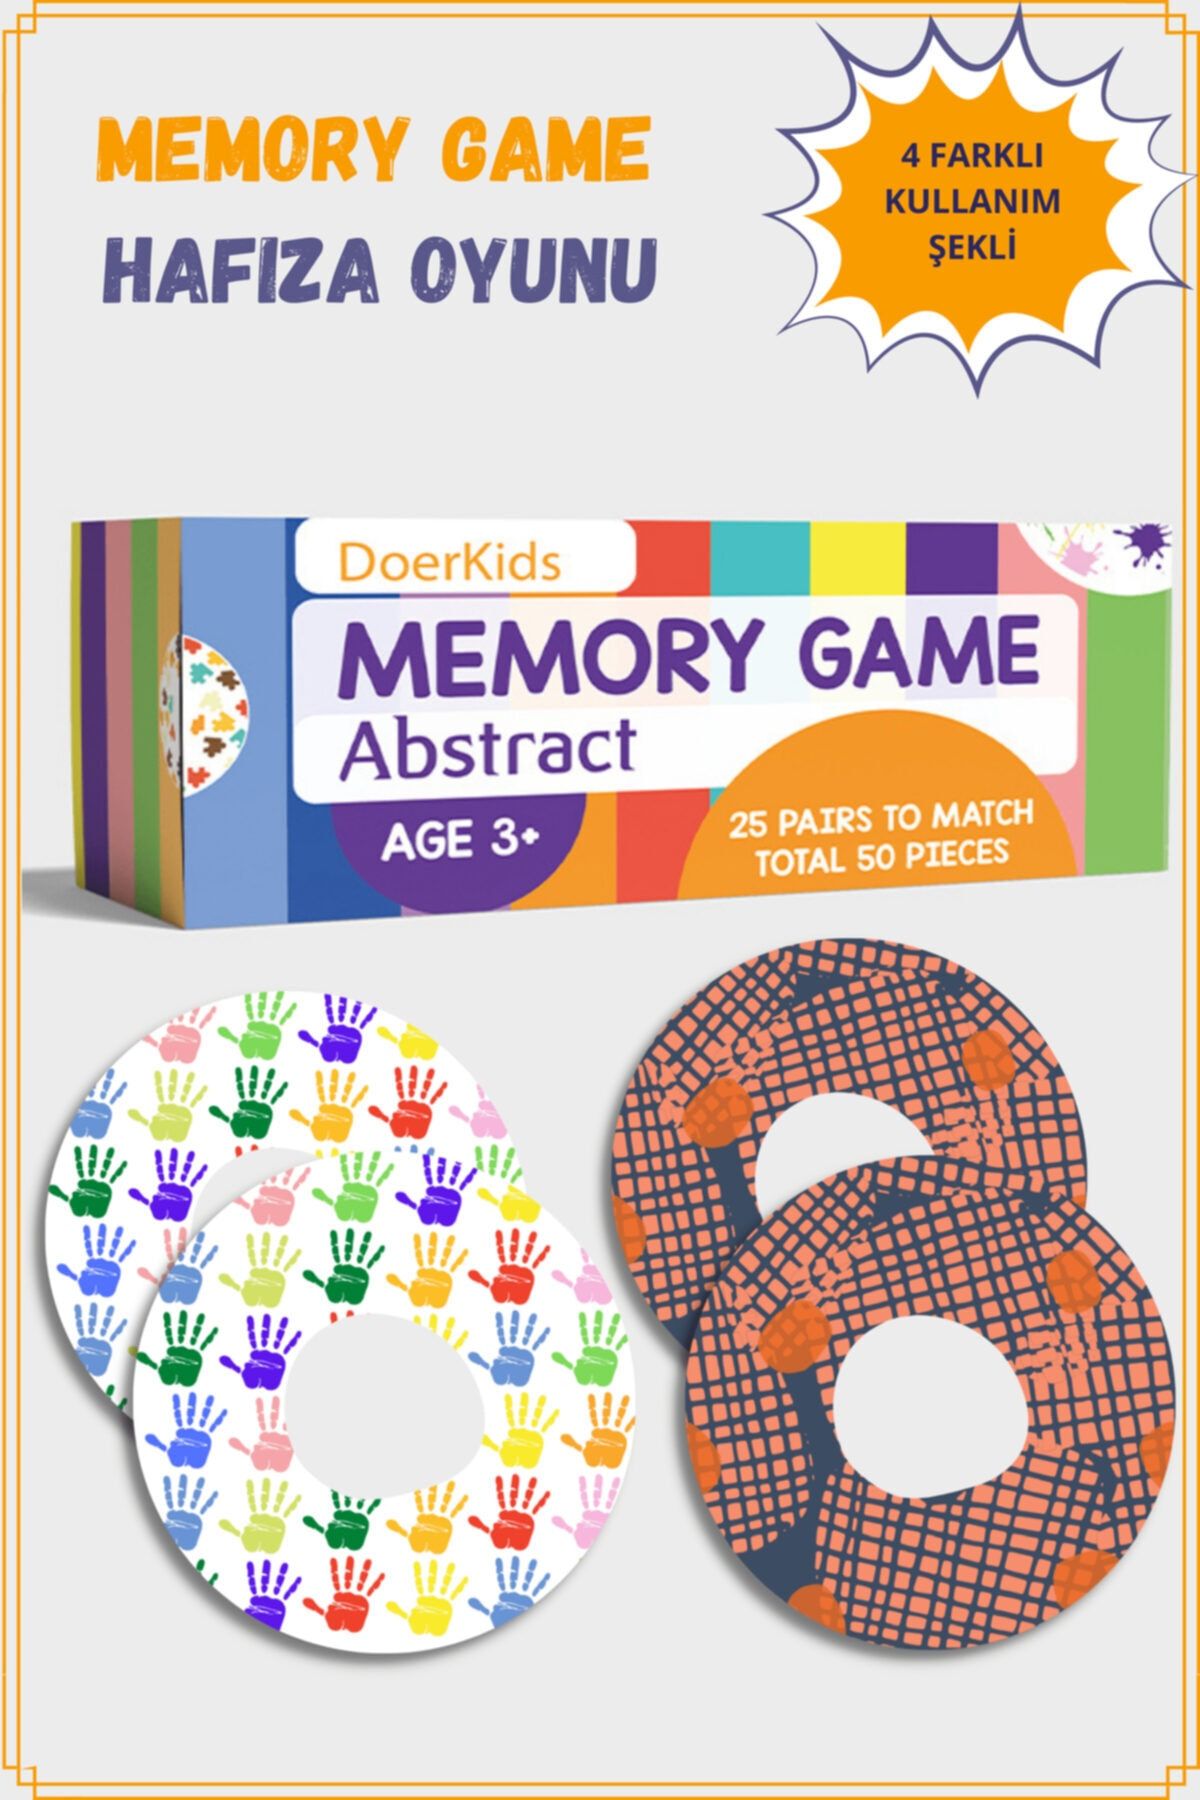 DoerKids Abstract Memory Game - Eşleştirme Beceri Hafıza Oyunu - 4 Farklı Kullanım